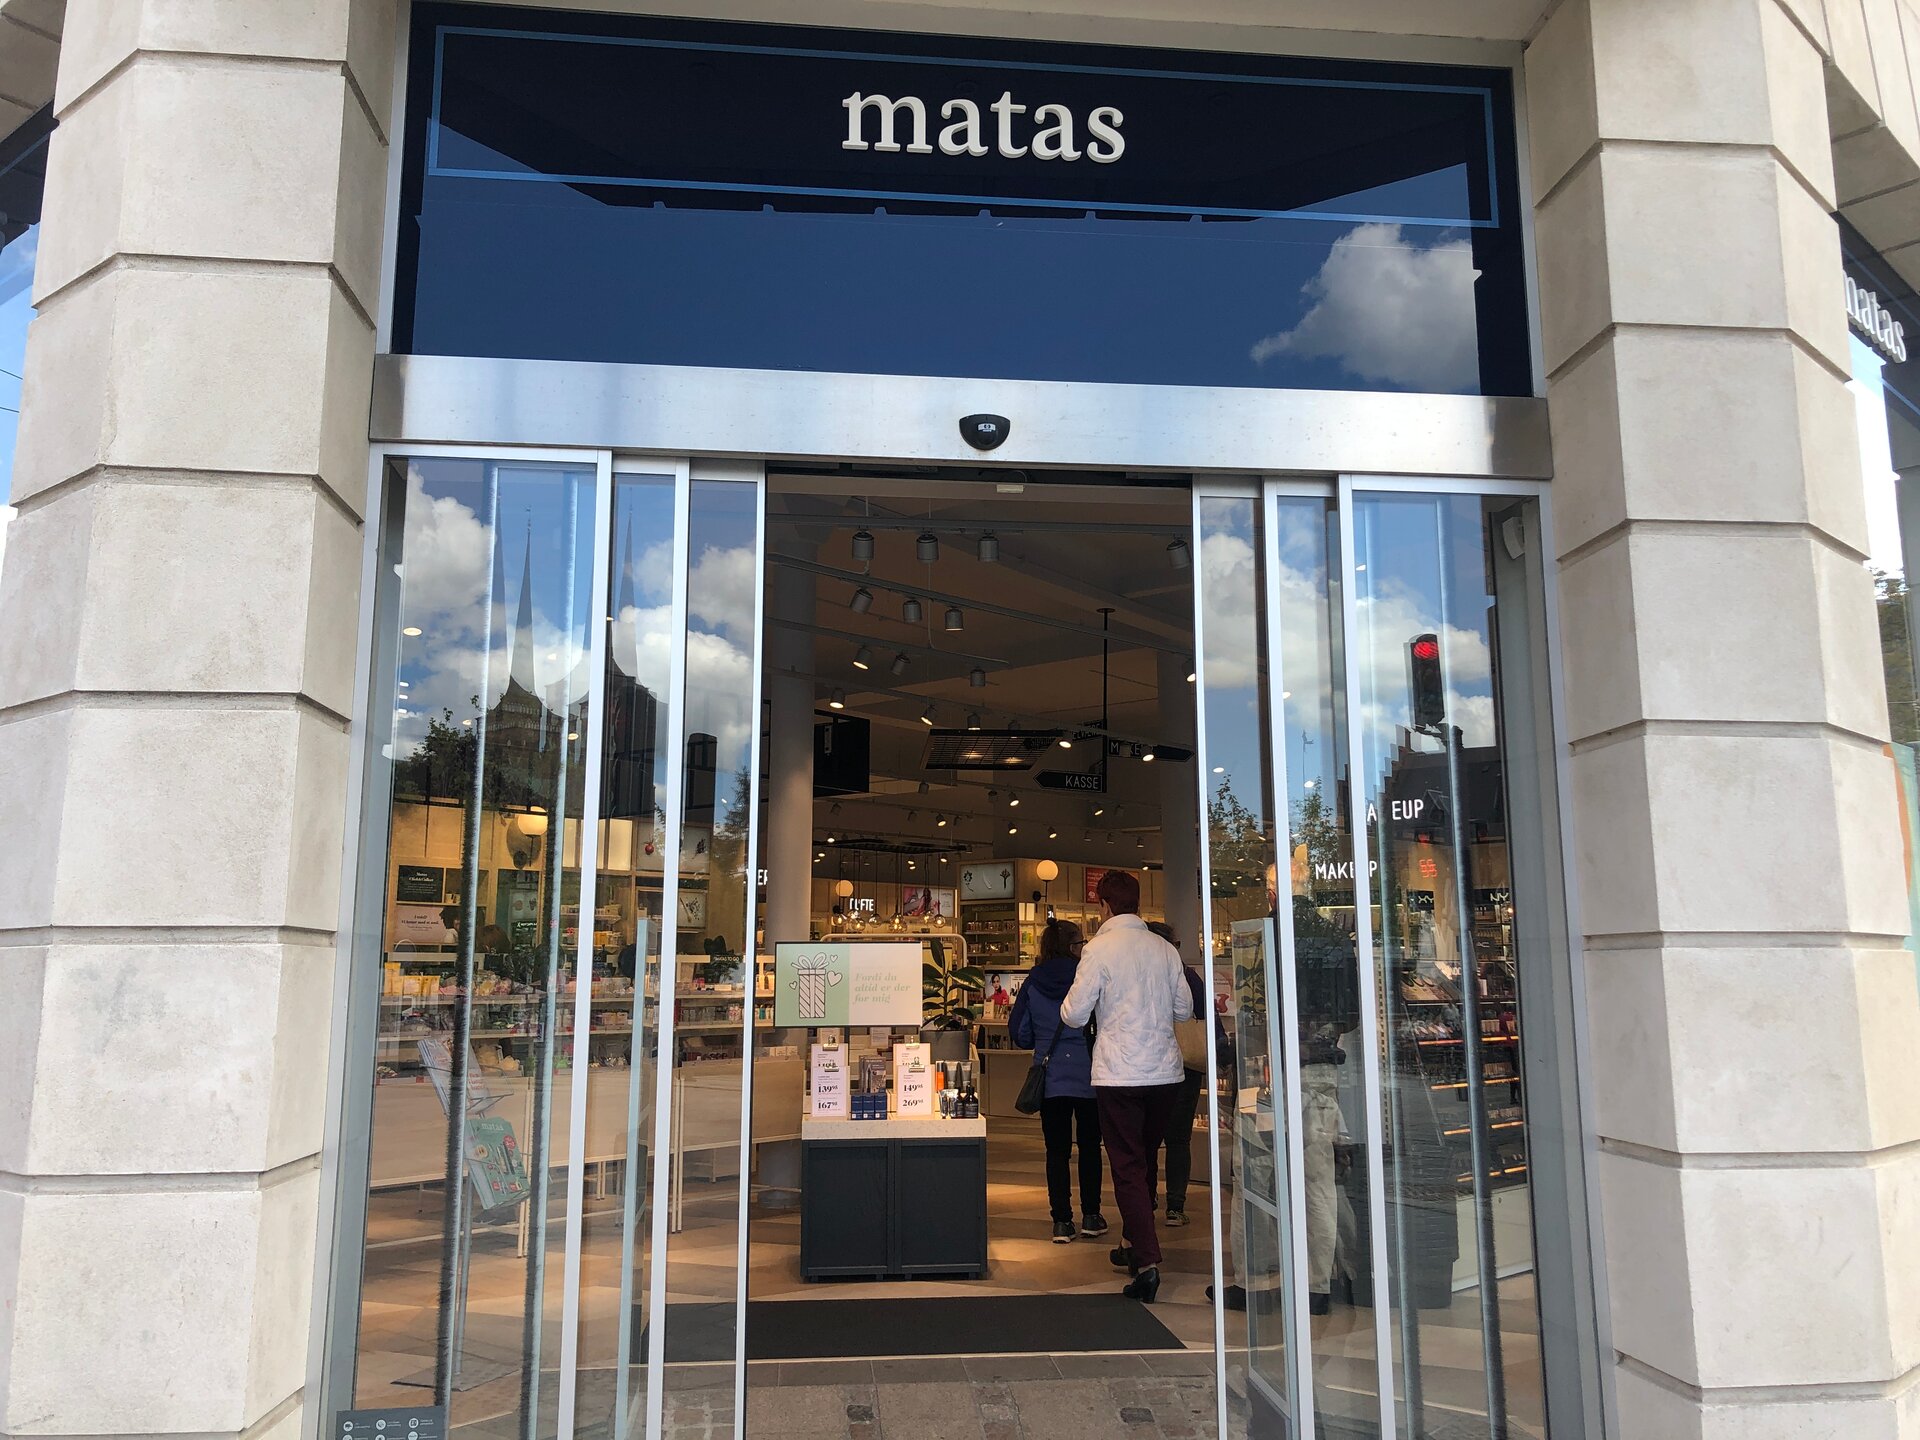 Matas - An omnichannel success story across platforms